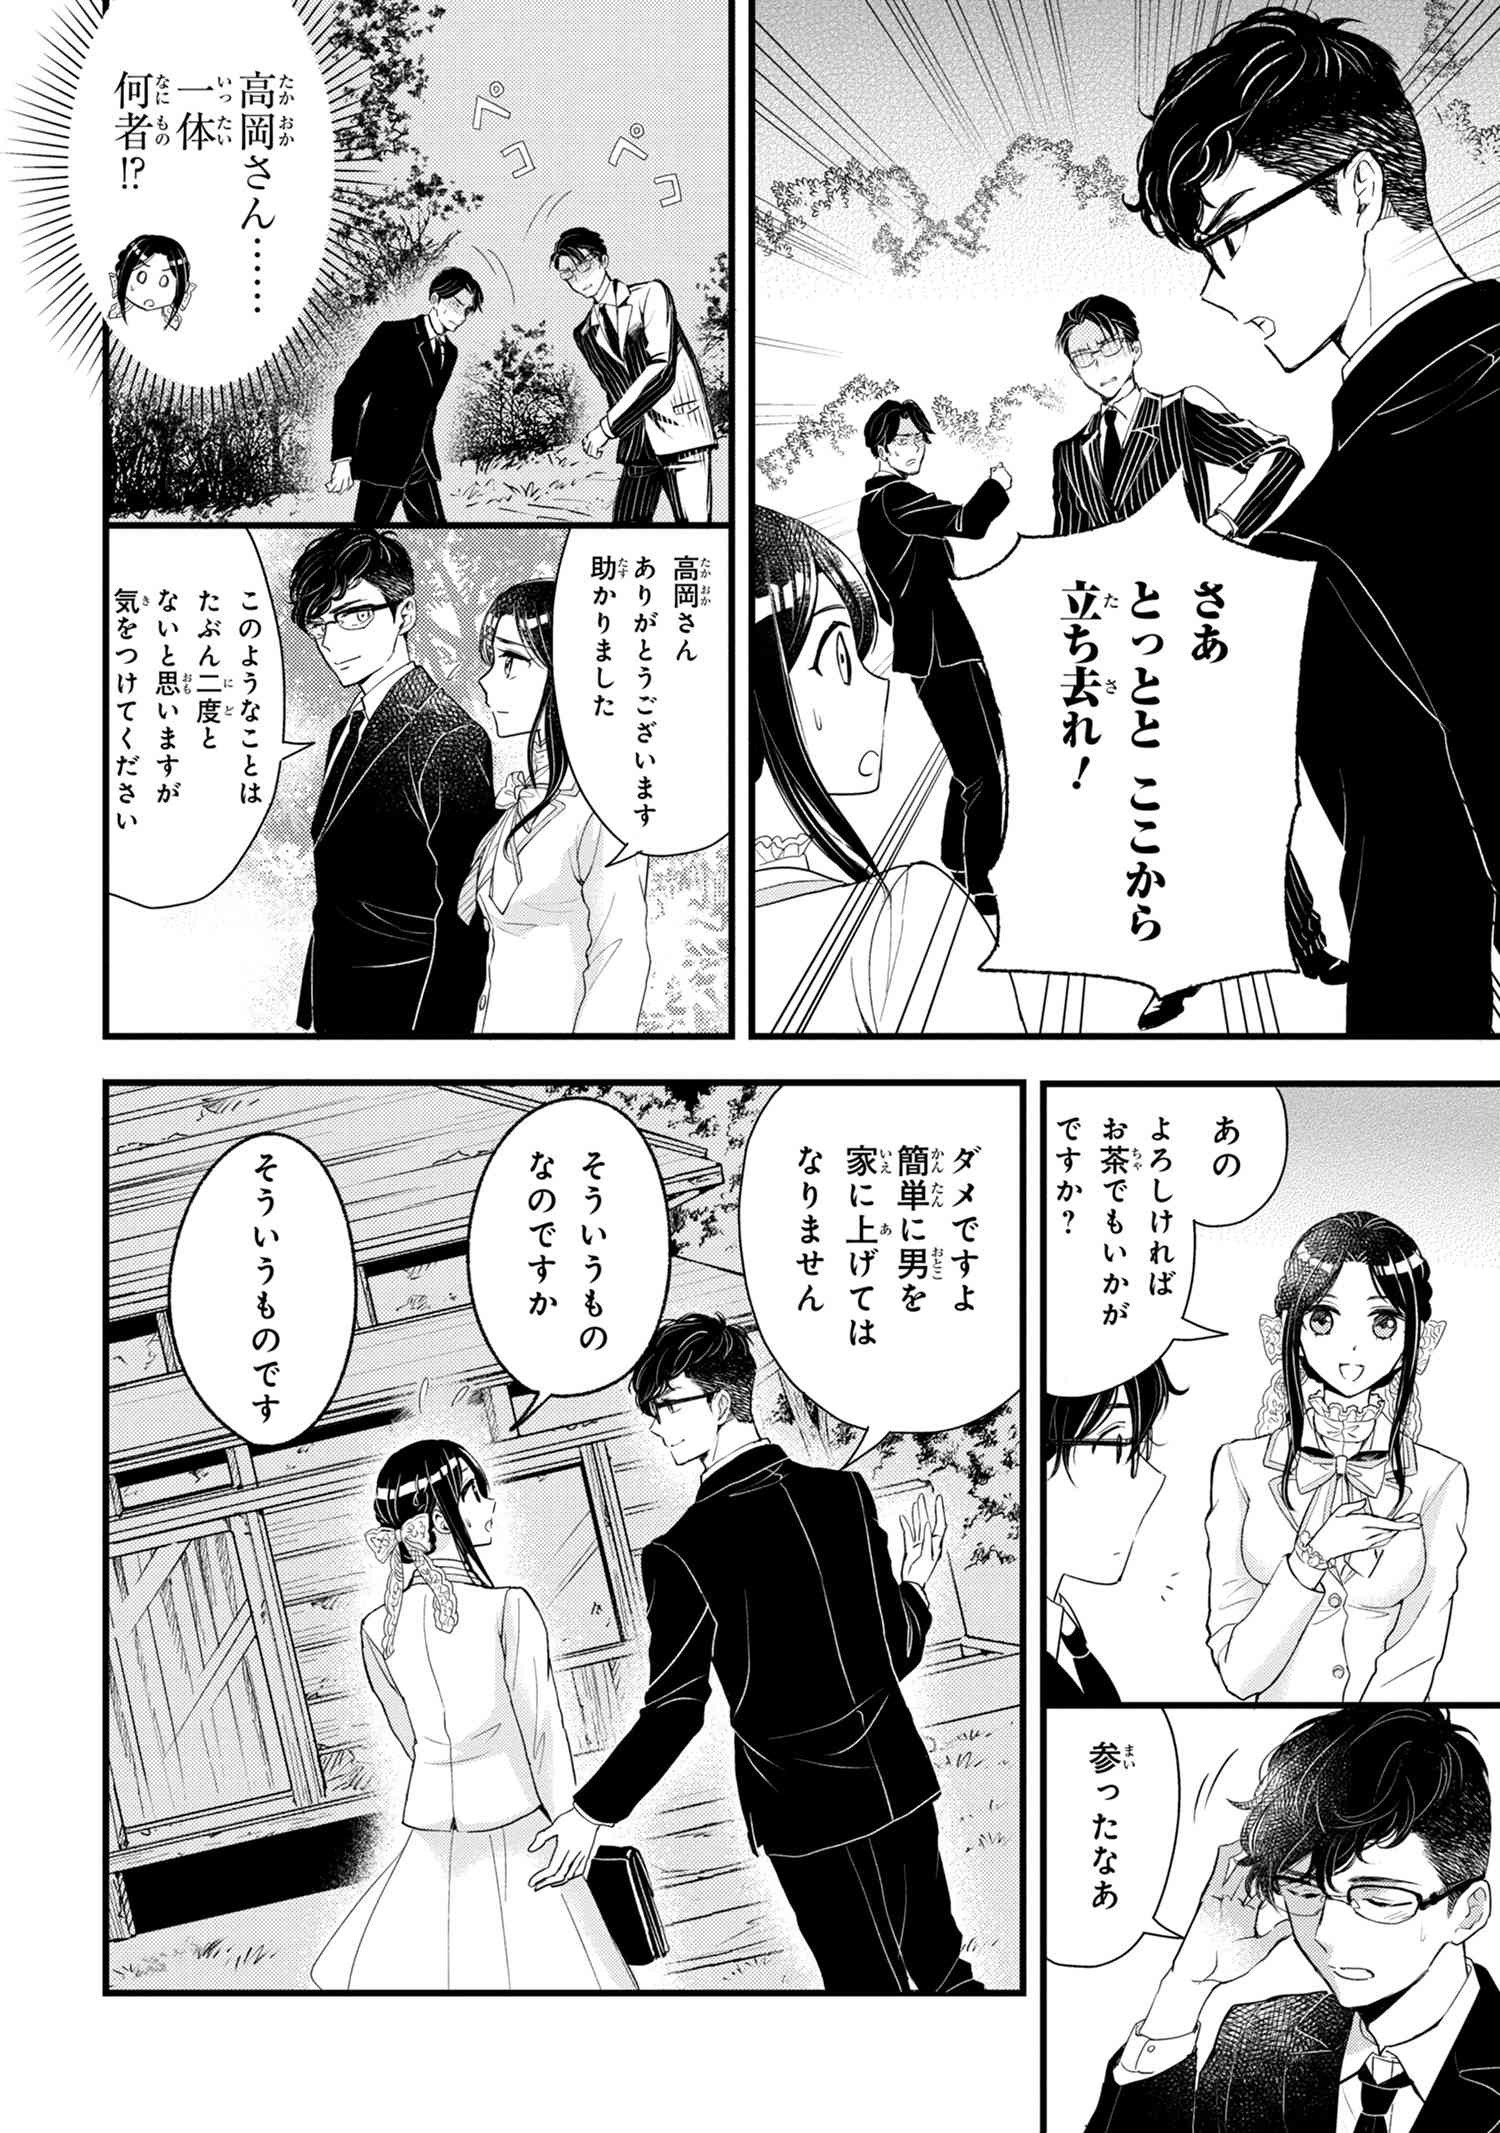 Reiko no Fuugi Akuyaku Reijou to Yobarete imasu ga, tada no Binbou Musume desu - Chapter 6-1 - Page 4